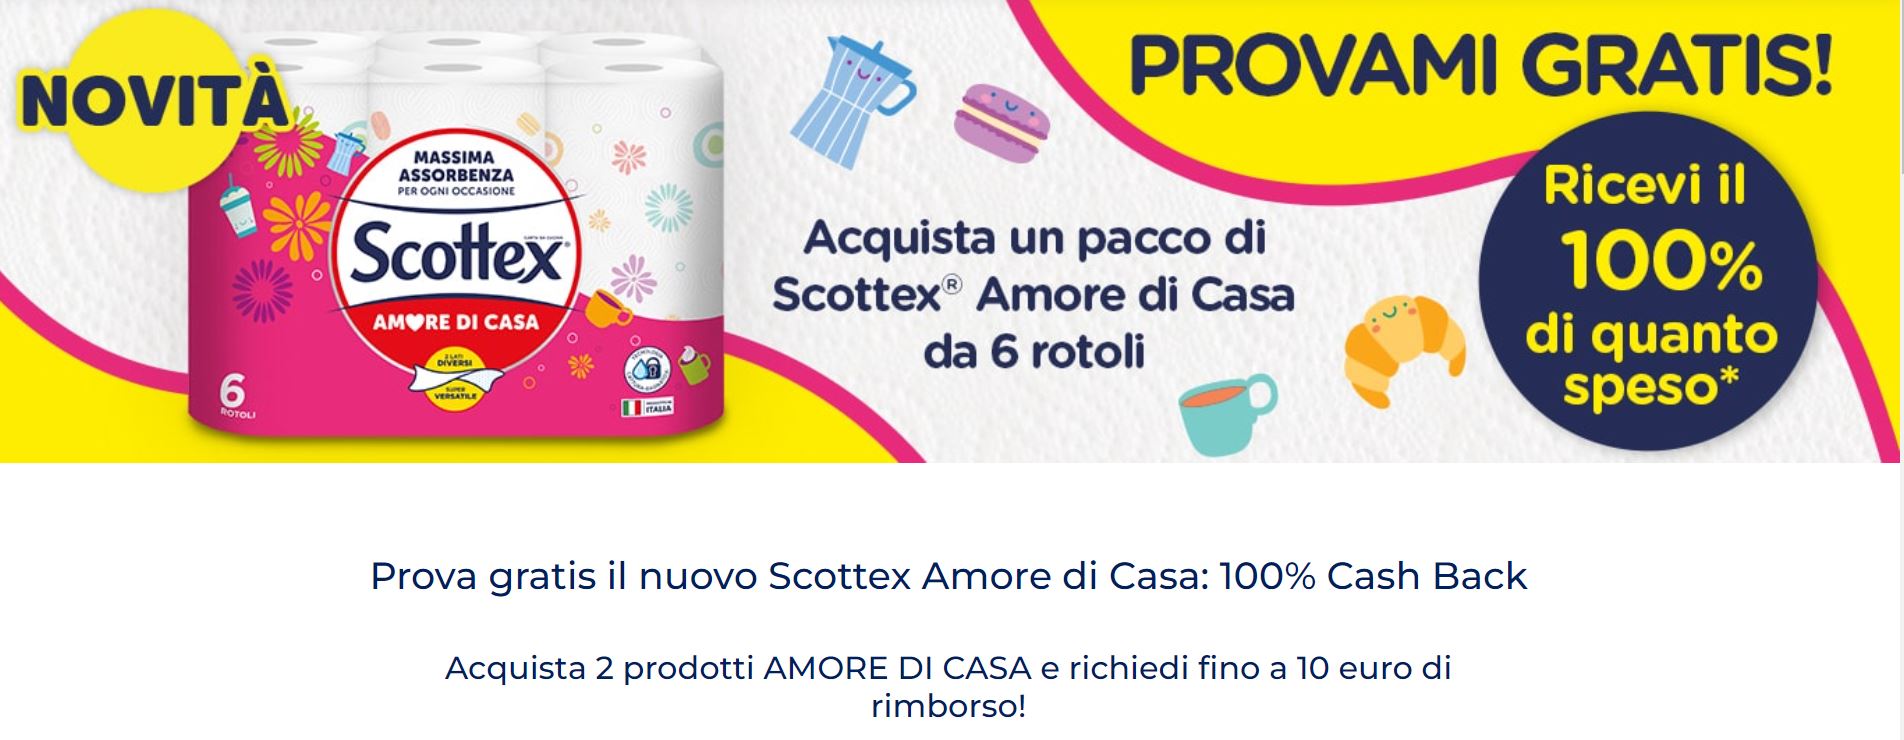 Prova gratis il nuovo Scottex Amore di Casa: 100% Cashback - nuovo spendi e  riprendi sulla carta da cucina (solo Coop)